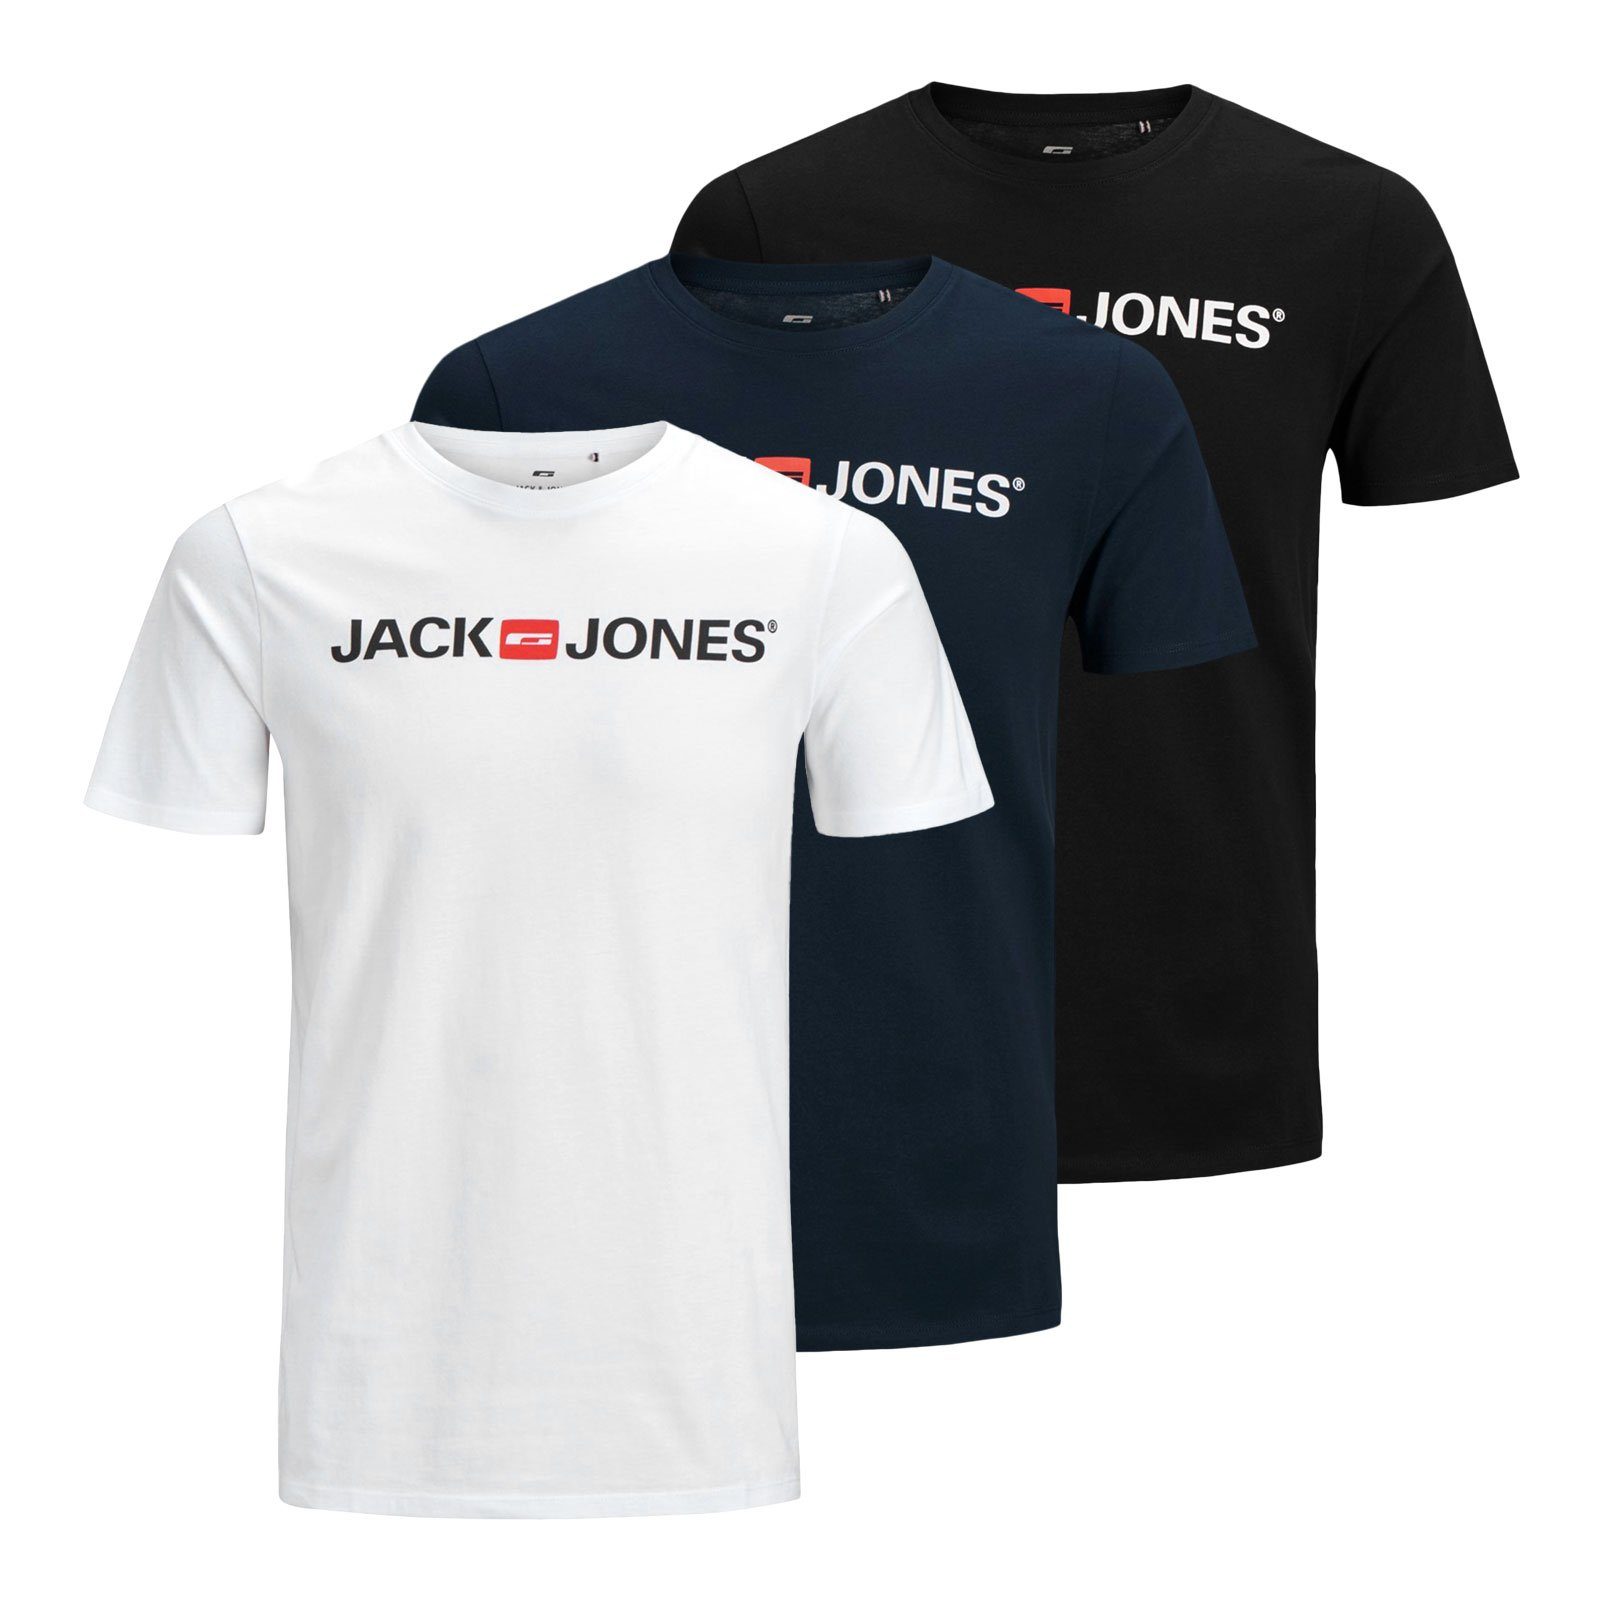 Jack & Jones T-Shirt 3er Pack Logo Tee Crew Neck mit Markenschriftzug 12137126 - black / white / navy blazer